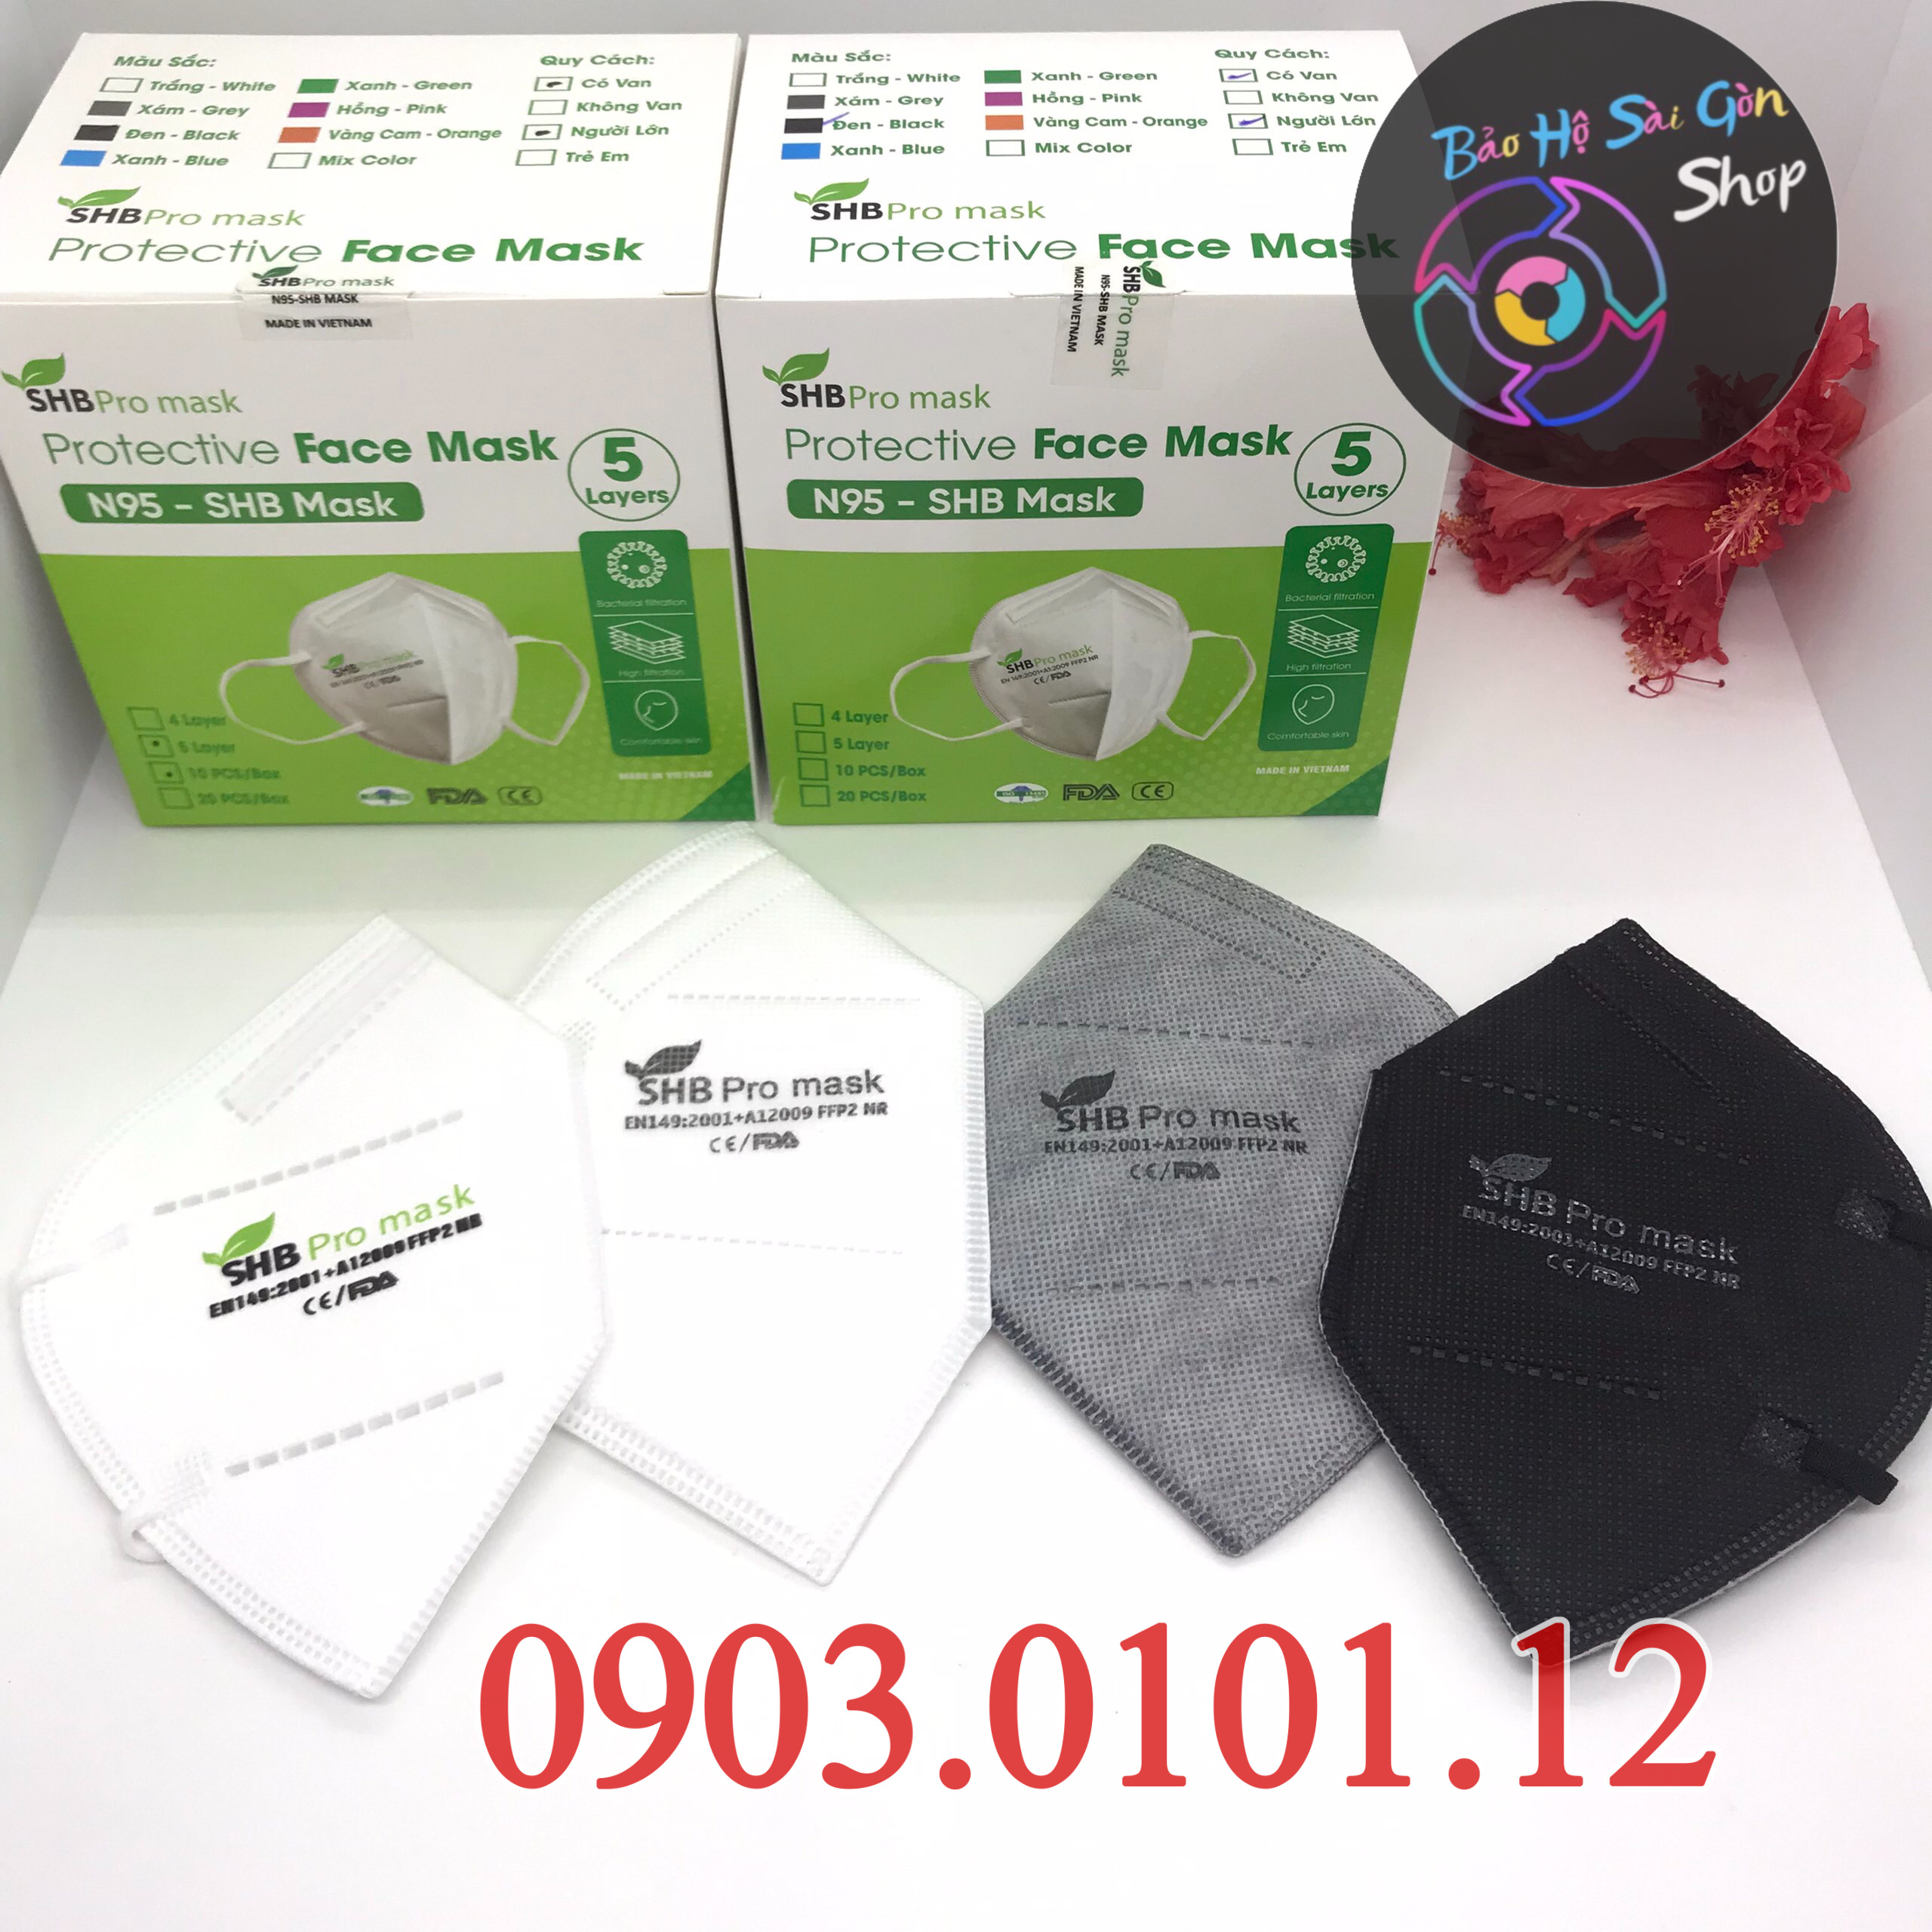 Khẩu trang n95 SHB Pro mask chính hãng, Kn95 cao cấp 5 lớp kháng khuẩn chuẩn FFP2 (hộp 20 cái)